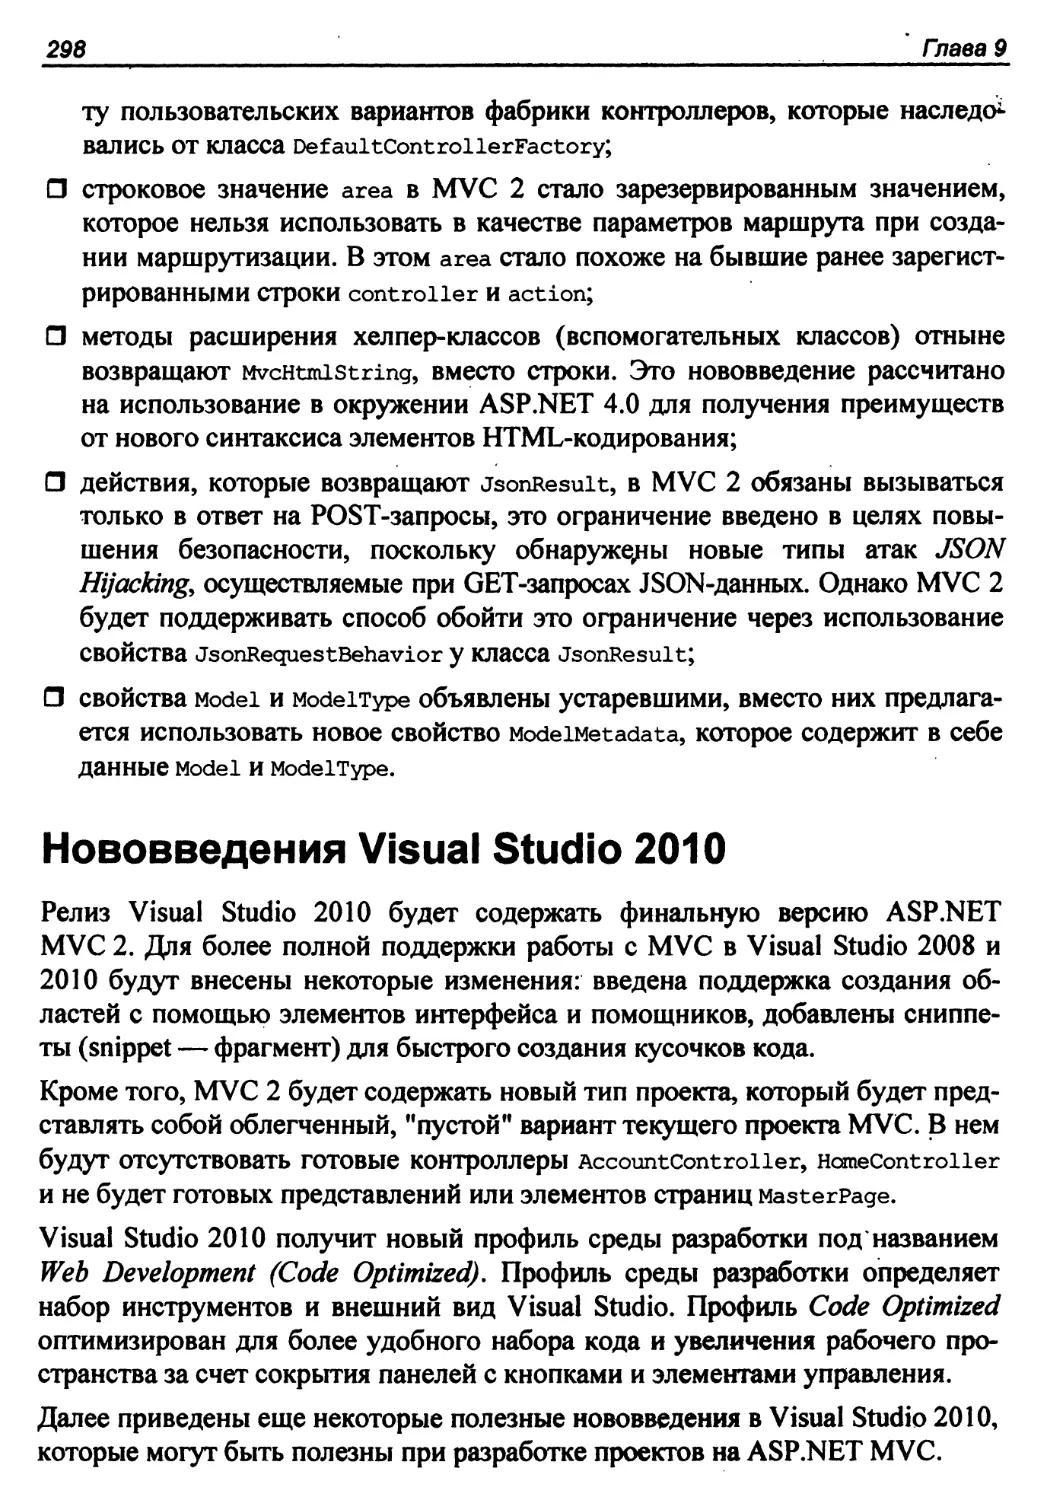 Нововведения Visual Studio 2010